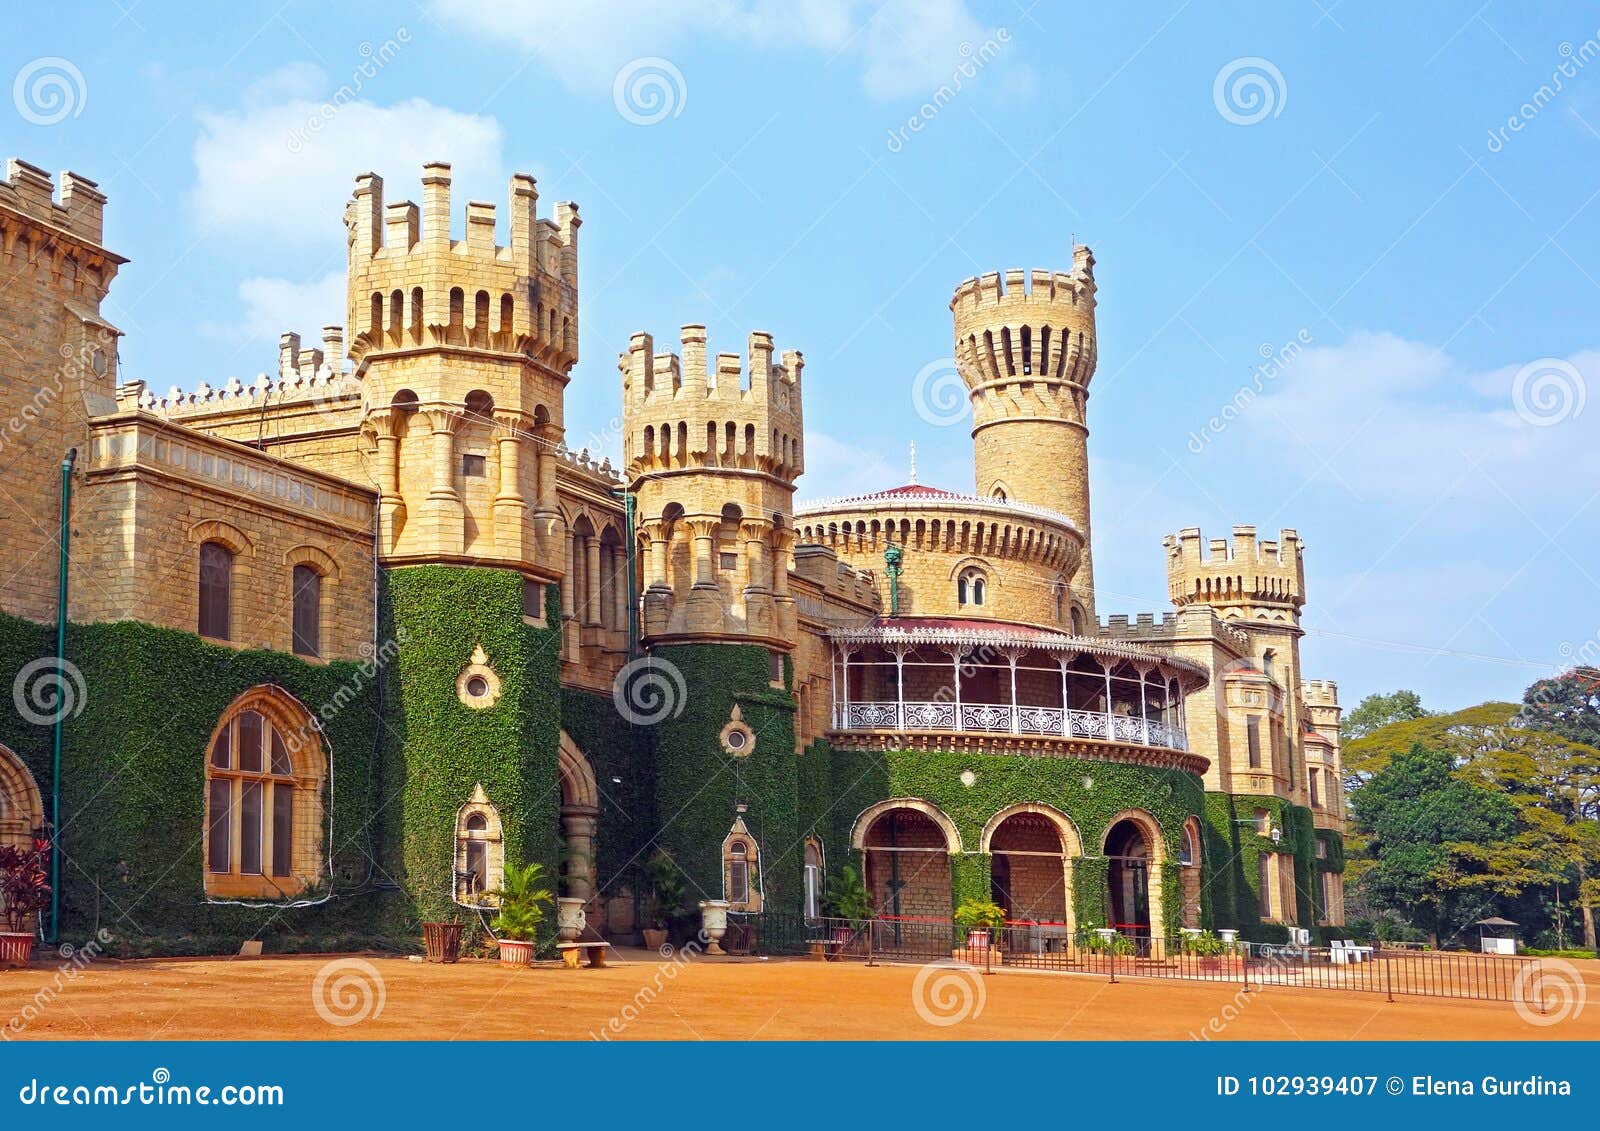 bangalore palace, bangalore, karnataka state, india